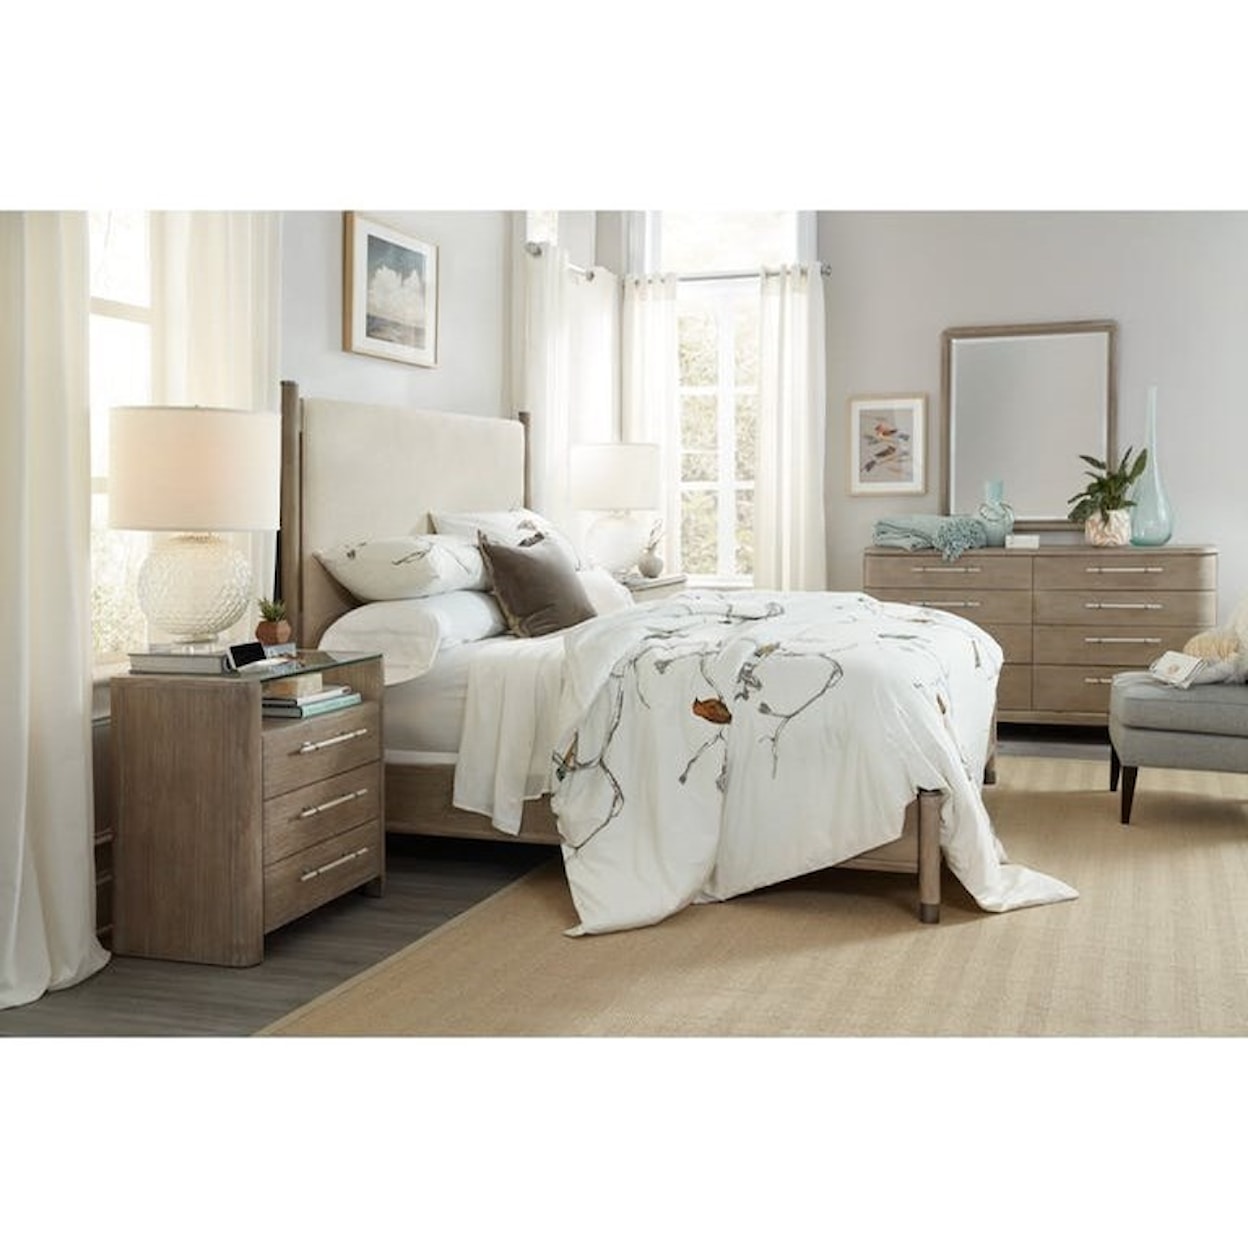 Hooker Furniture Affinity King Bedroom Group